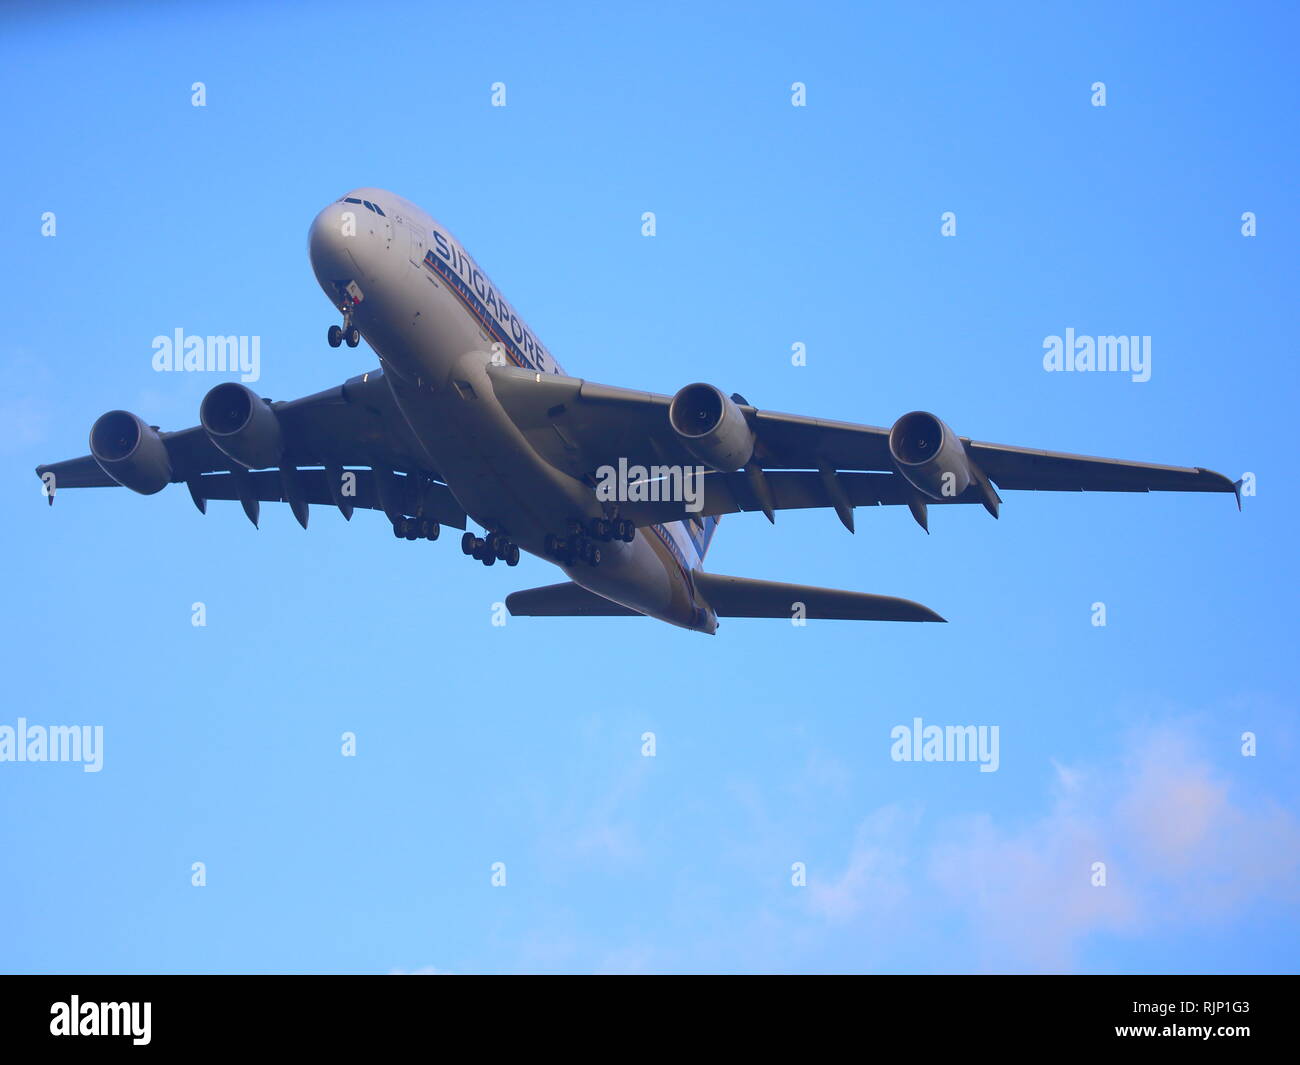 Airbus A380 Singapore airlines passenger jet aircraft with landing gear abaissé Banque D'Images